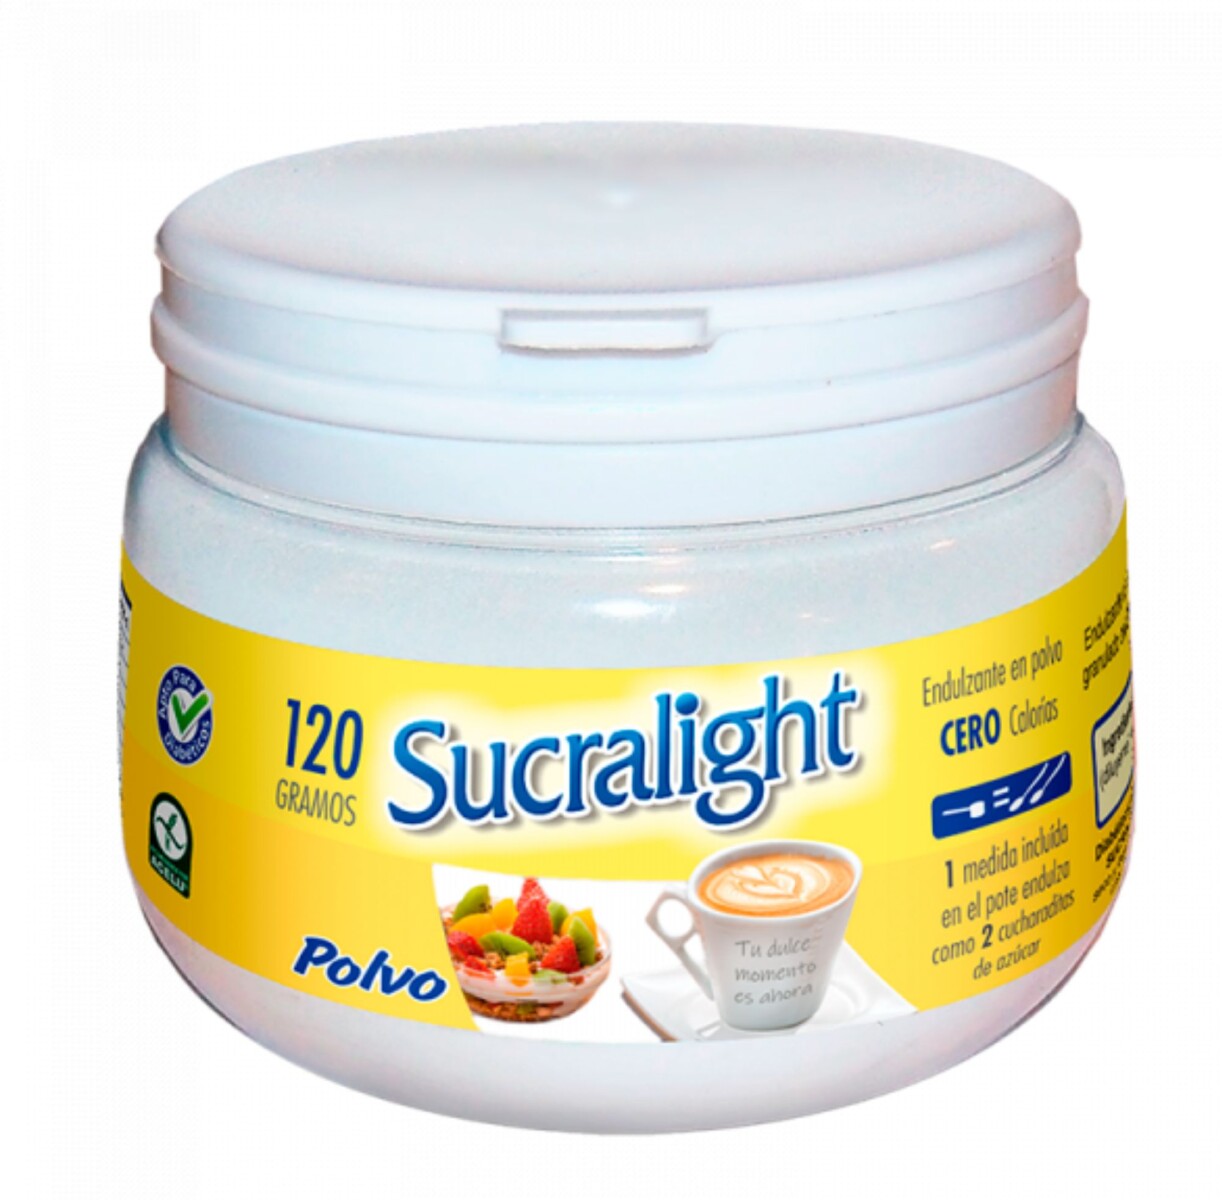 Sucralight polvo pote 120g 